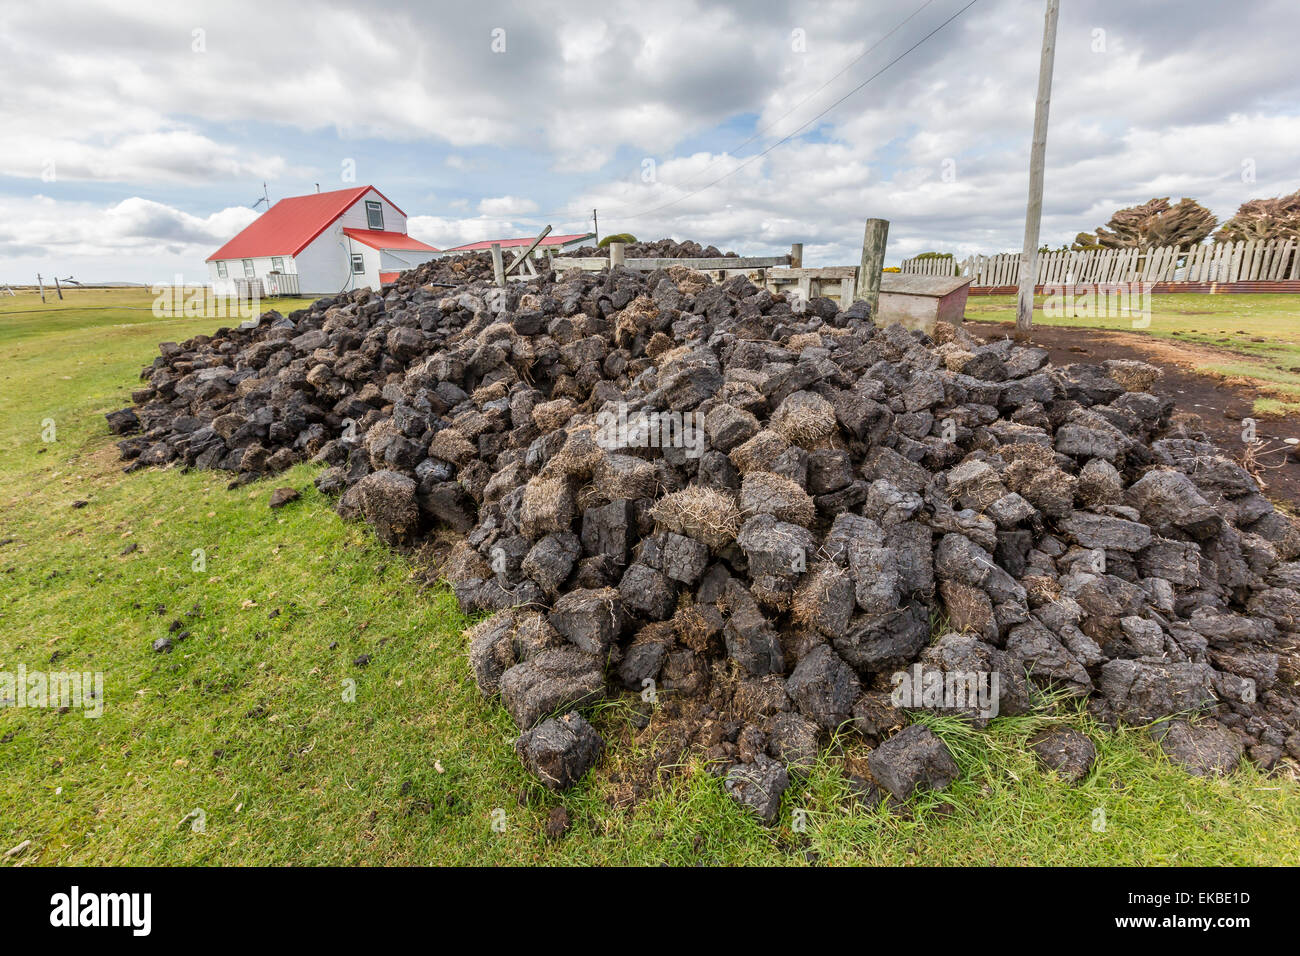 Le séchage de la tourbe dans le vent pour le carburant à Long Island, à l'extérieur fermes ovines Stanley, Îles Falkland, U.K. Protectorat outre-mer Banque D'Images